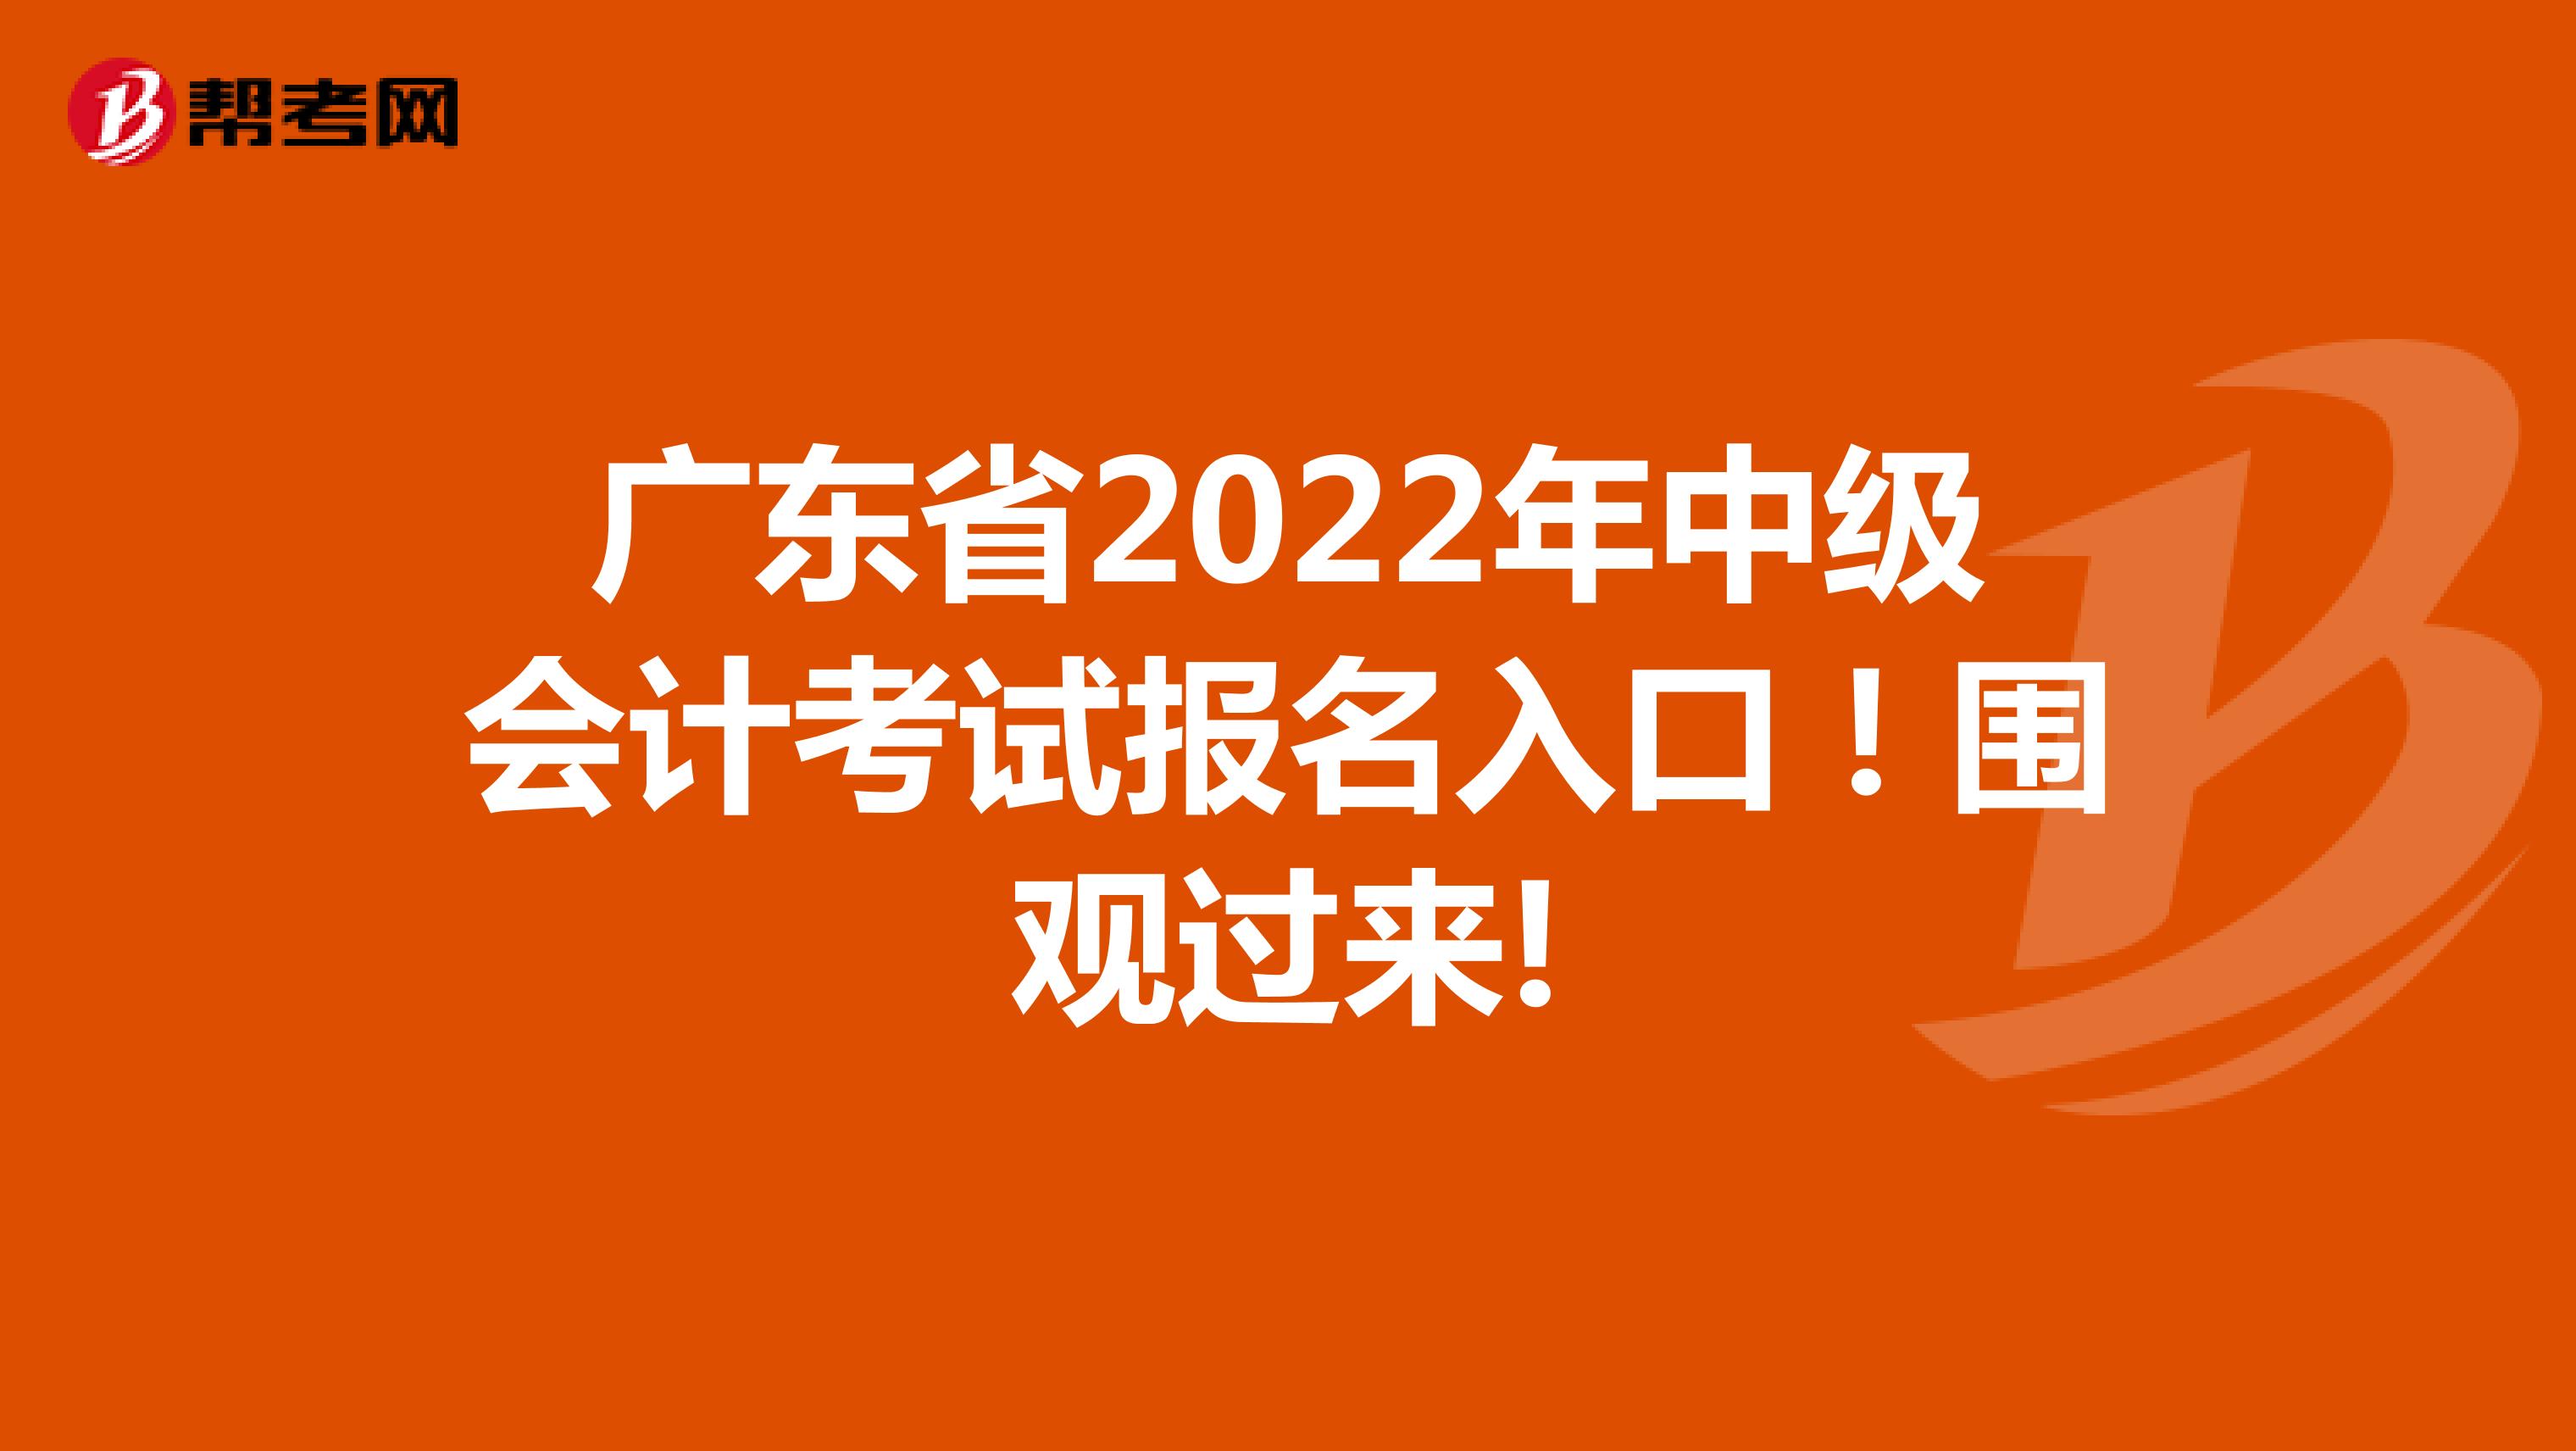 广东省2022年中级会计考试报名入口！围观过来!